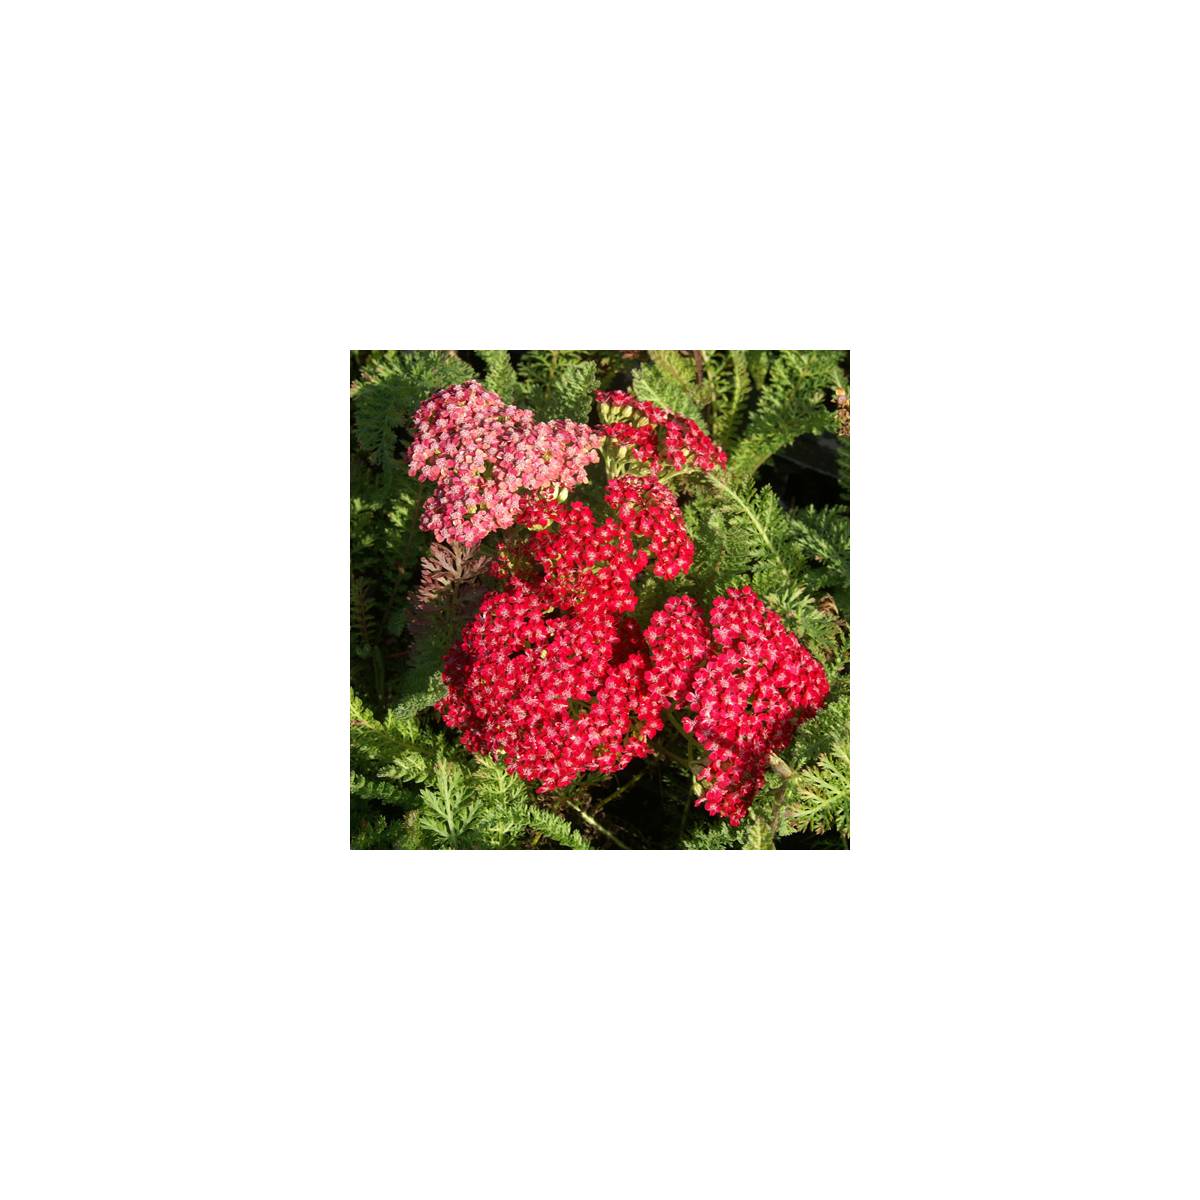 Achillée millefeuille red velvet/achillea millefolium 'red velvet'[-]lot de 9 godets